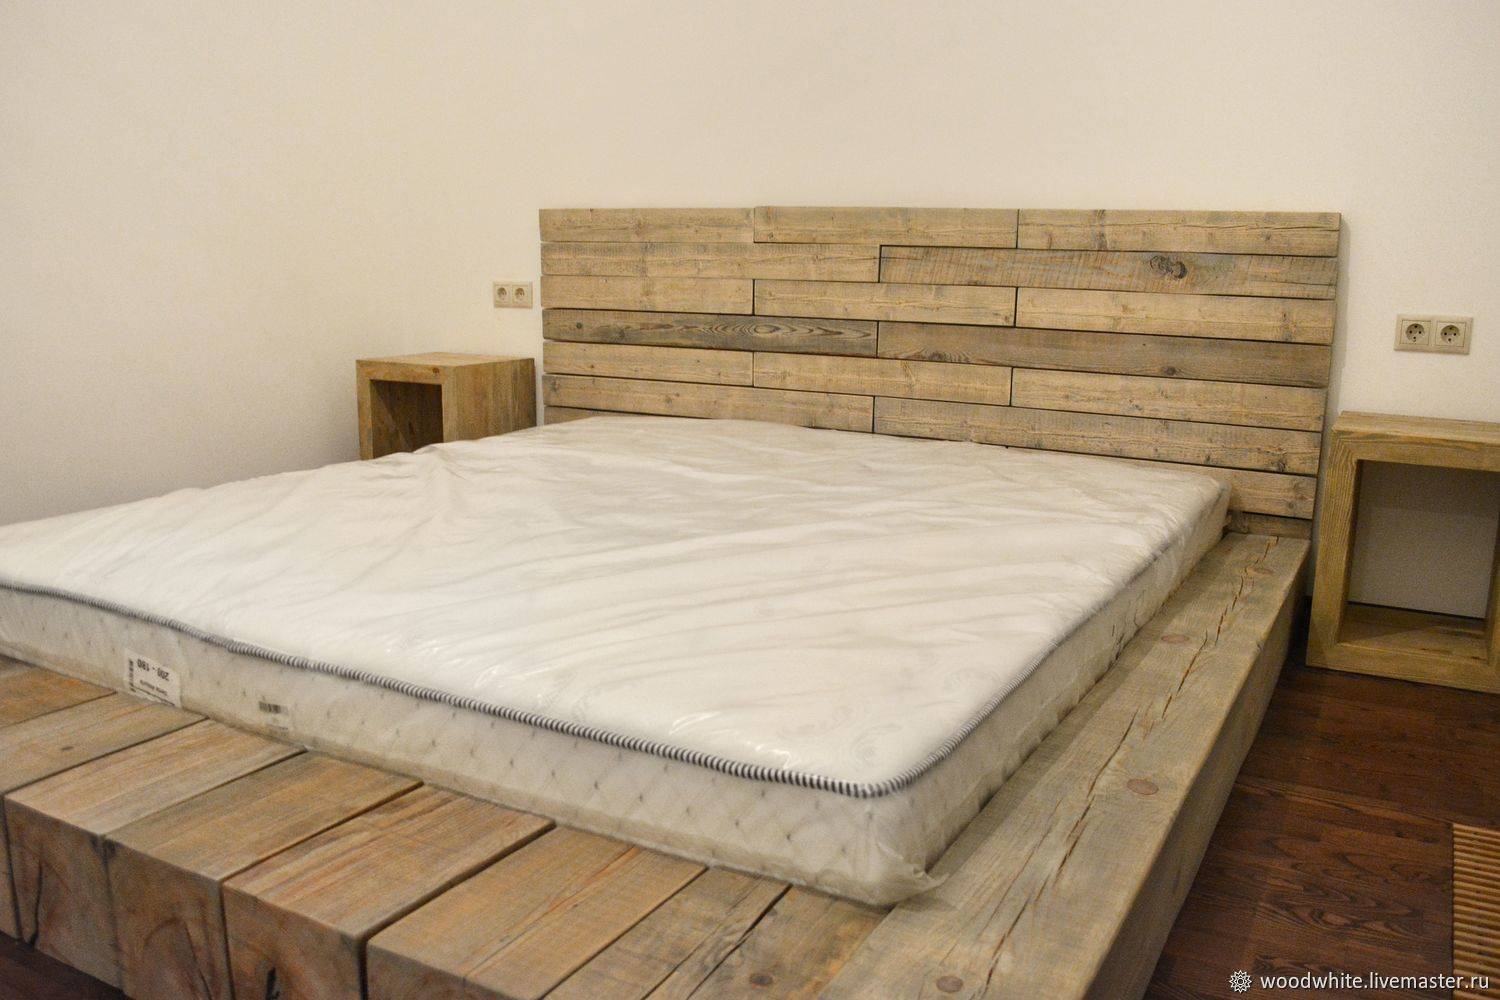 Кровать из дерева своими руками (74 фото): как сделать деревянную двуспальную кровать из бруса, двухъярусная модель, из досок или из бревен, идеи – ремонт своими руками на m-stone.ru